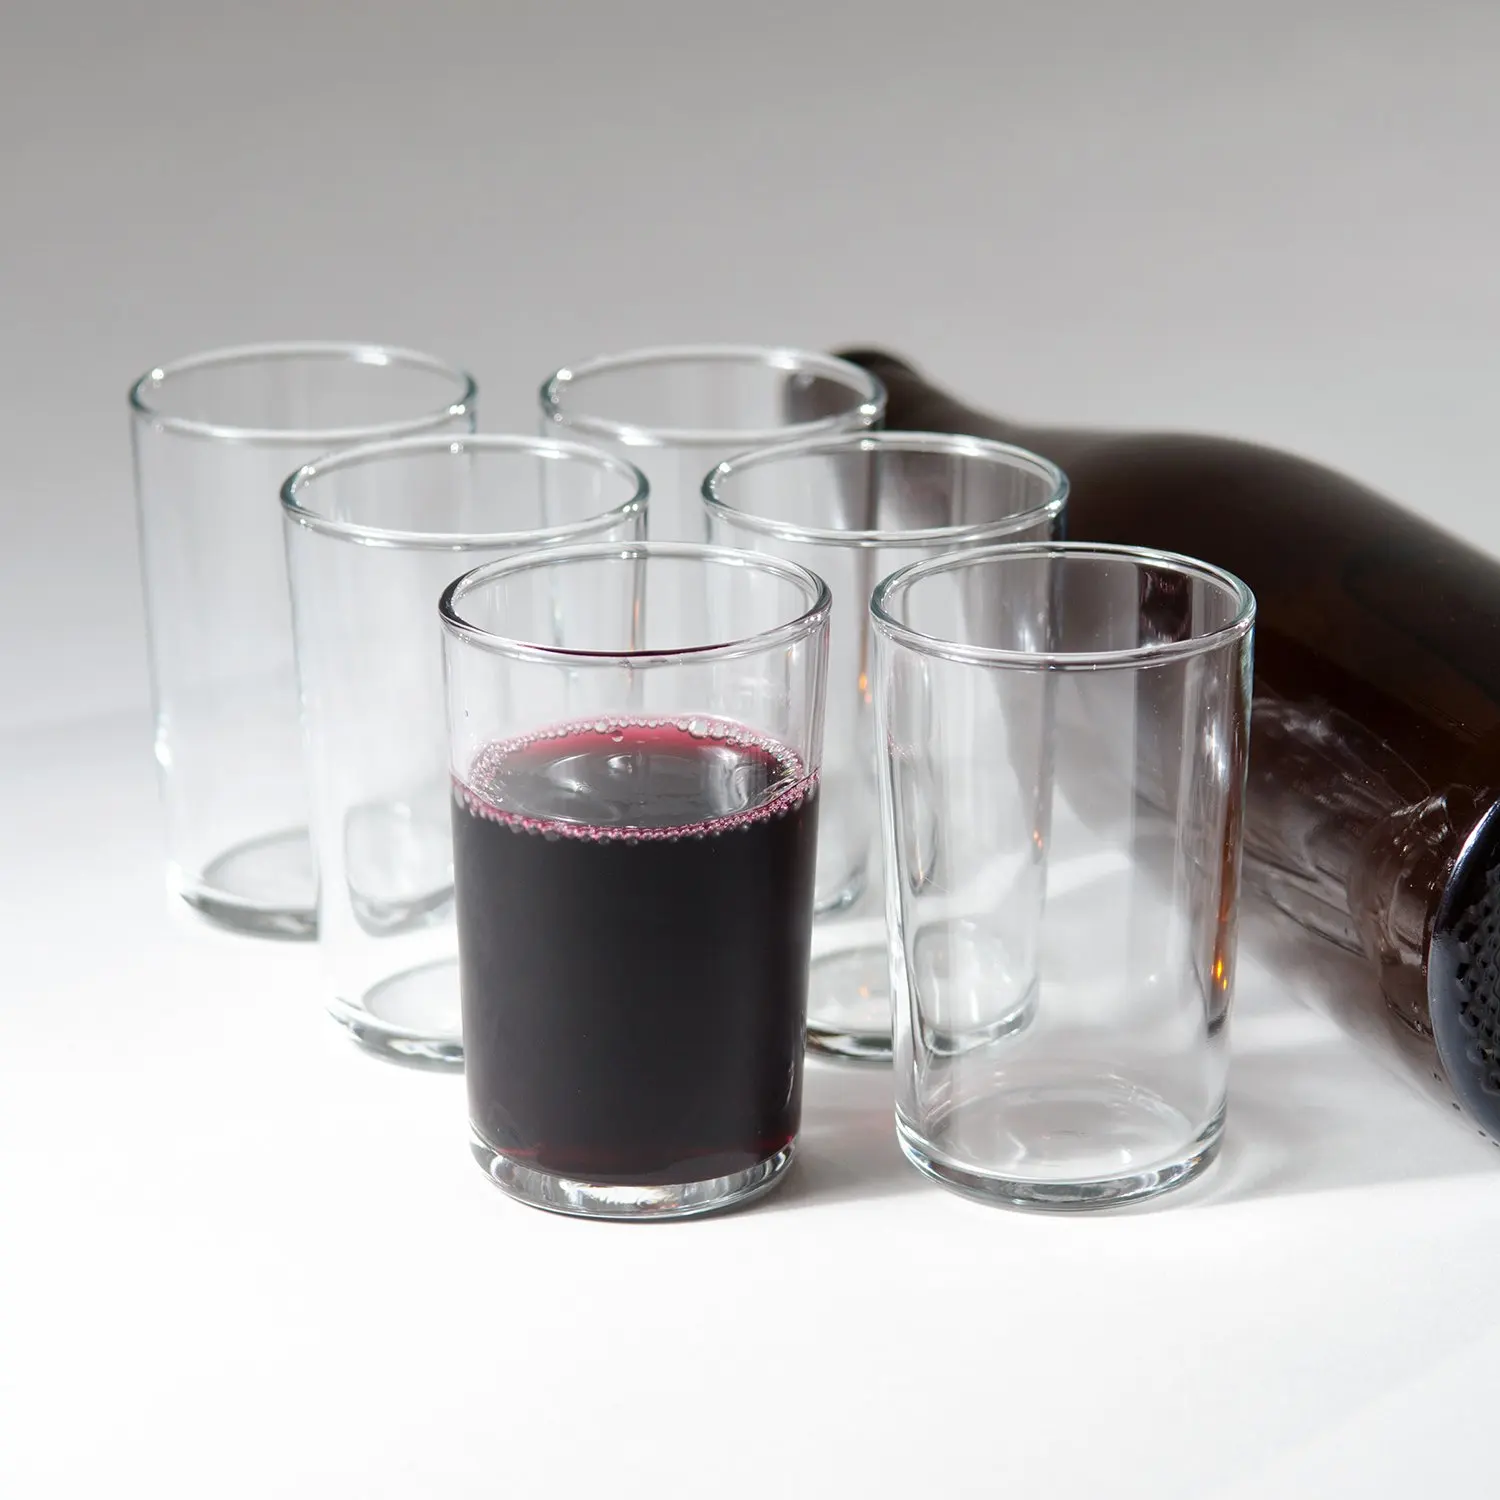 Cheap Small Italian Wine Glasses Find Small Italian Wine Glasses Deals